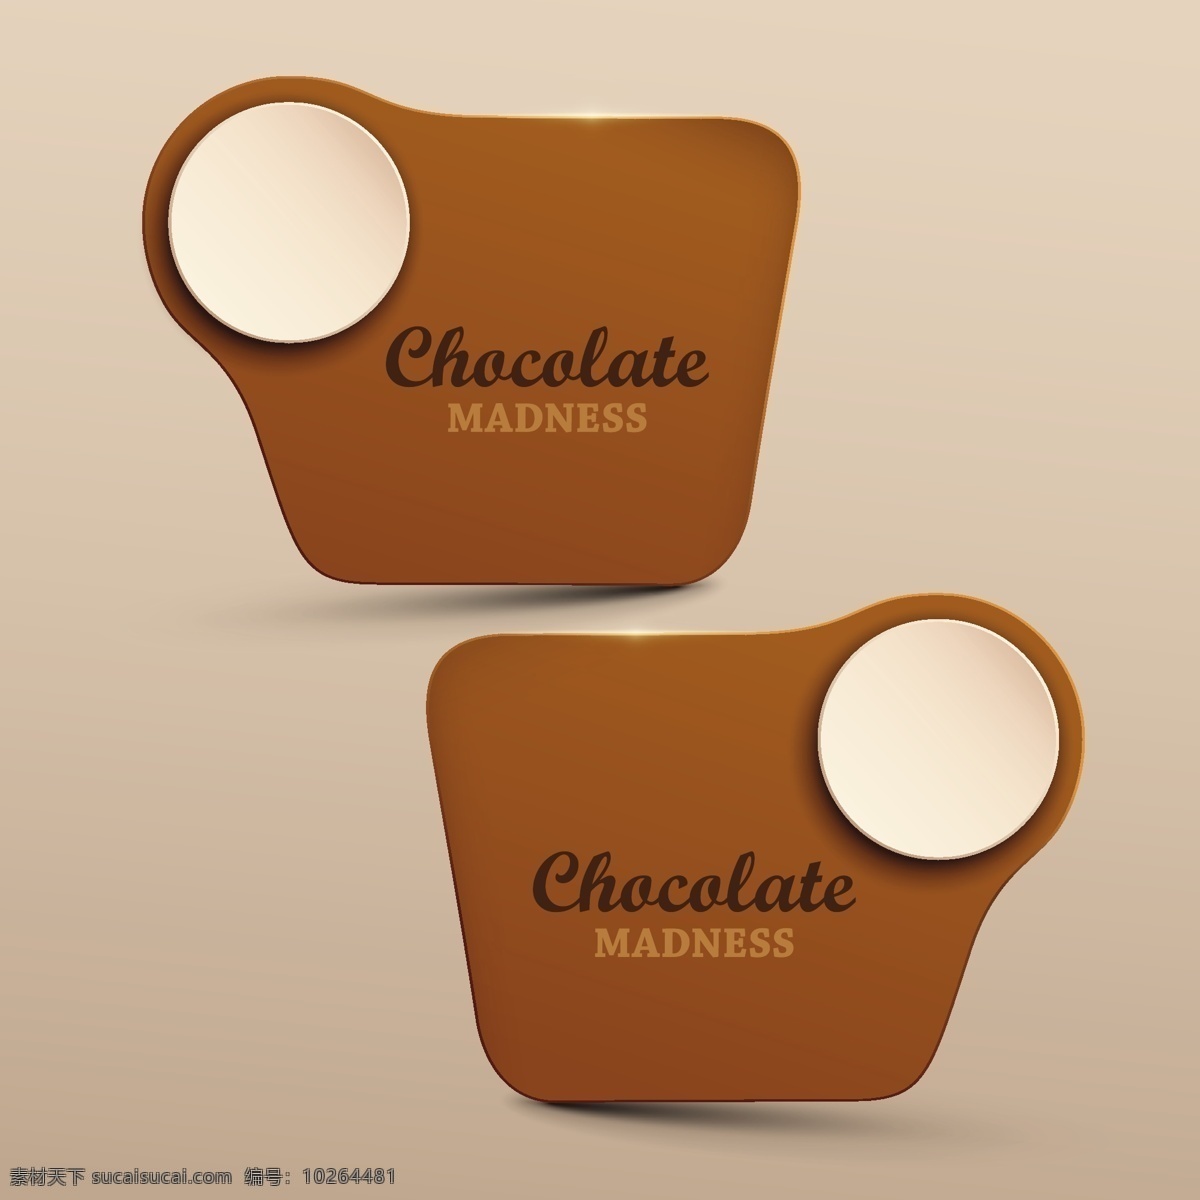 咖啡店 巧克力 主体 矢量 咖啡 店铺 平面 图标 咖啡豆 精致 扁平化 模板